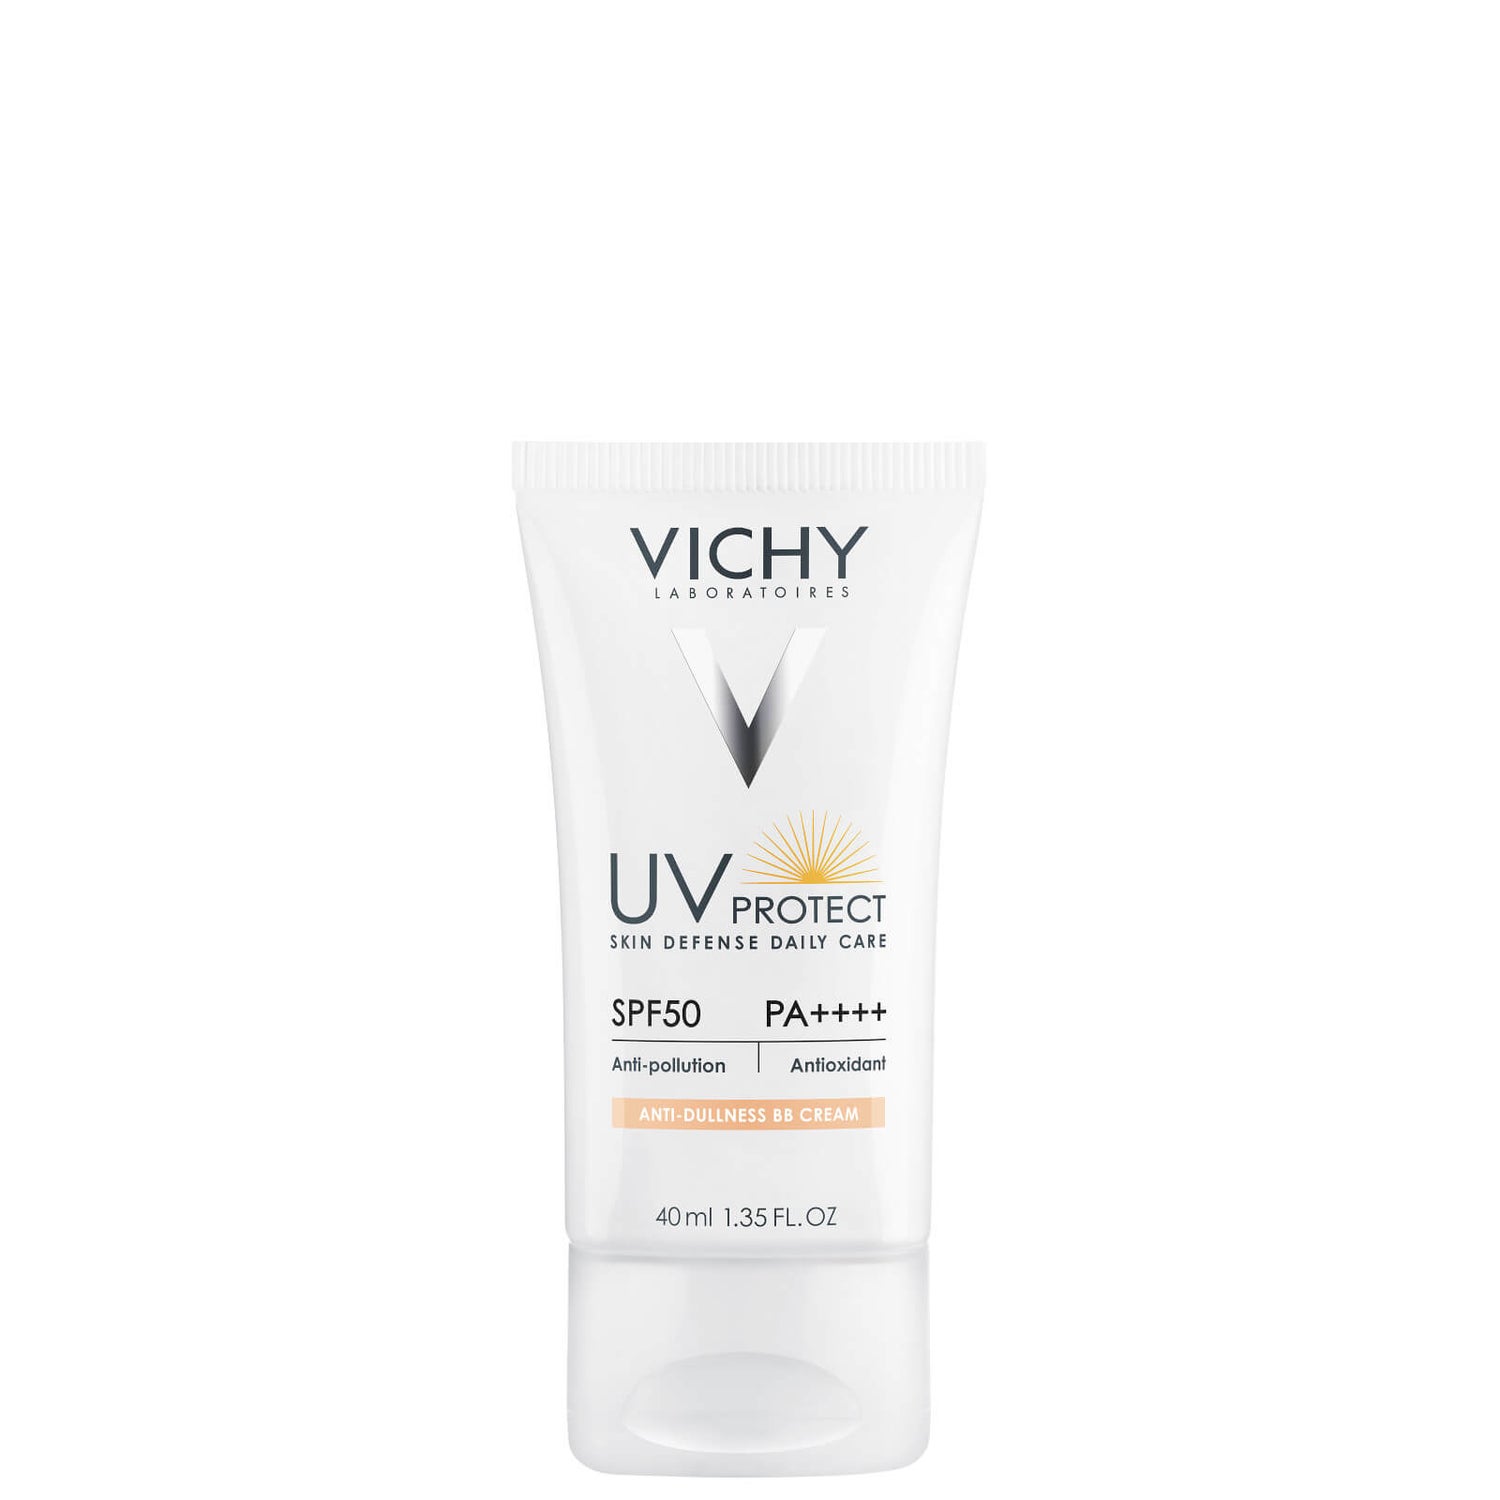 VICHY イデアル ソレイユ UVプロテクト アンチダルネス BBクリーム 40ml